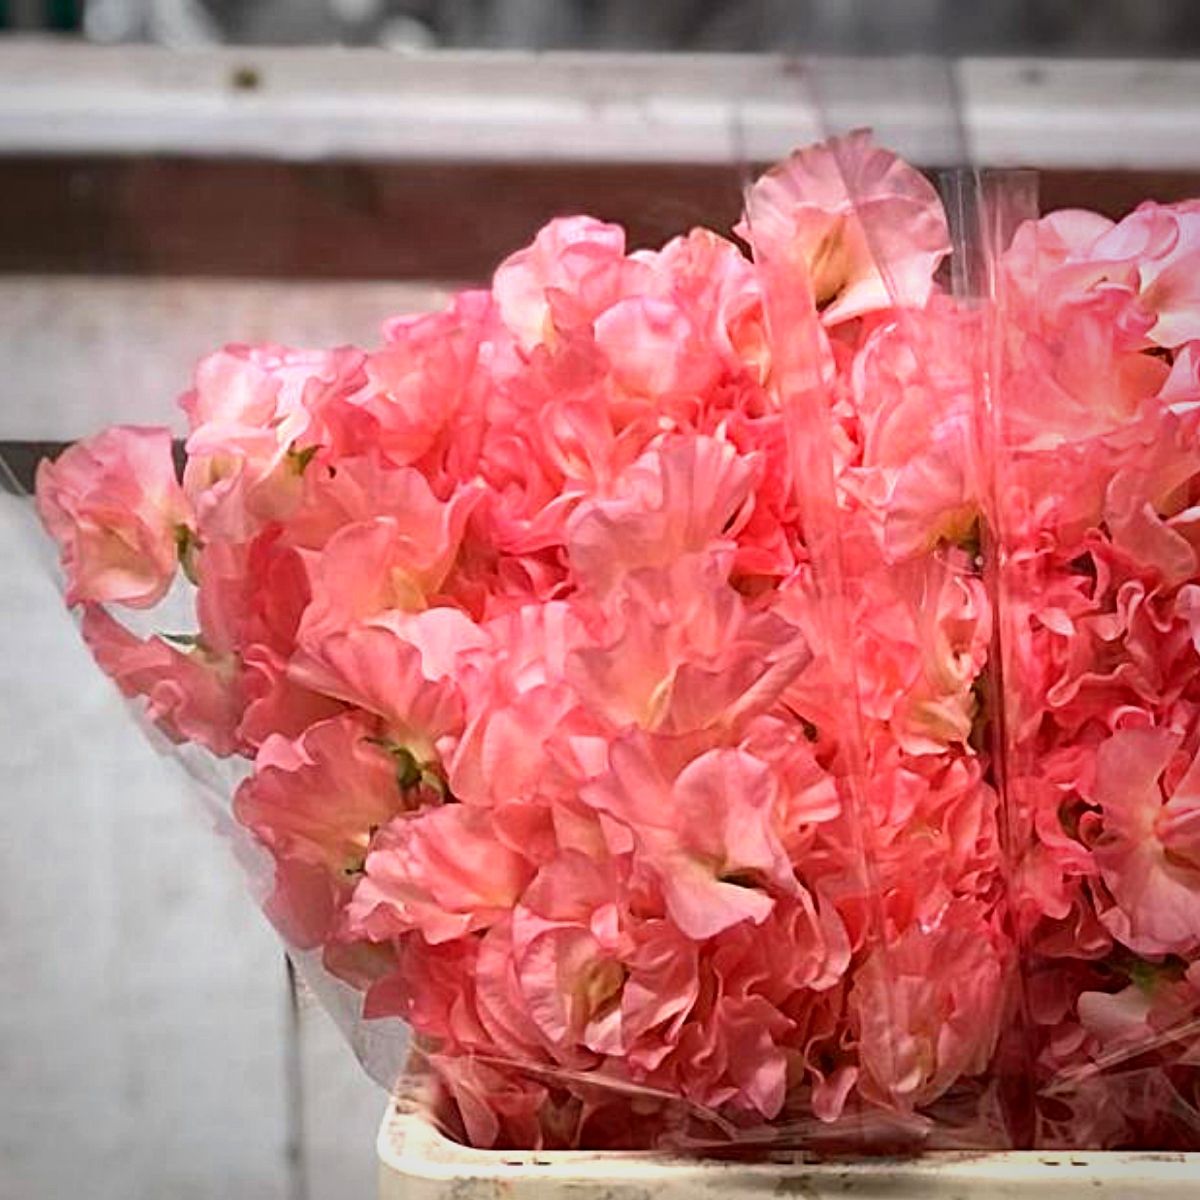 Japanese Flowers - Peter van Delft Weekly #51- Lathyrus Pink